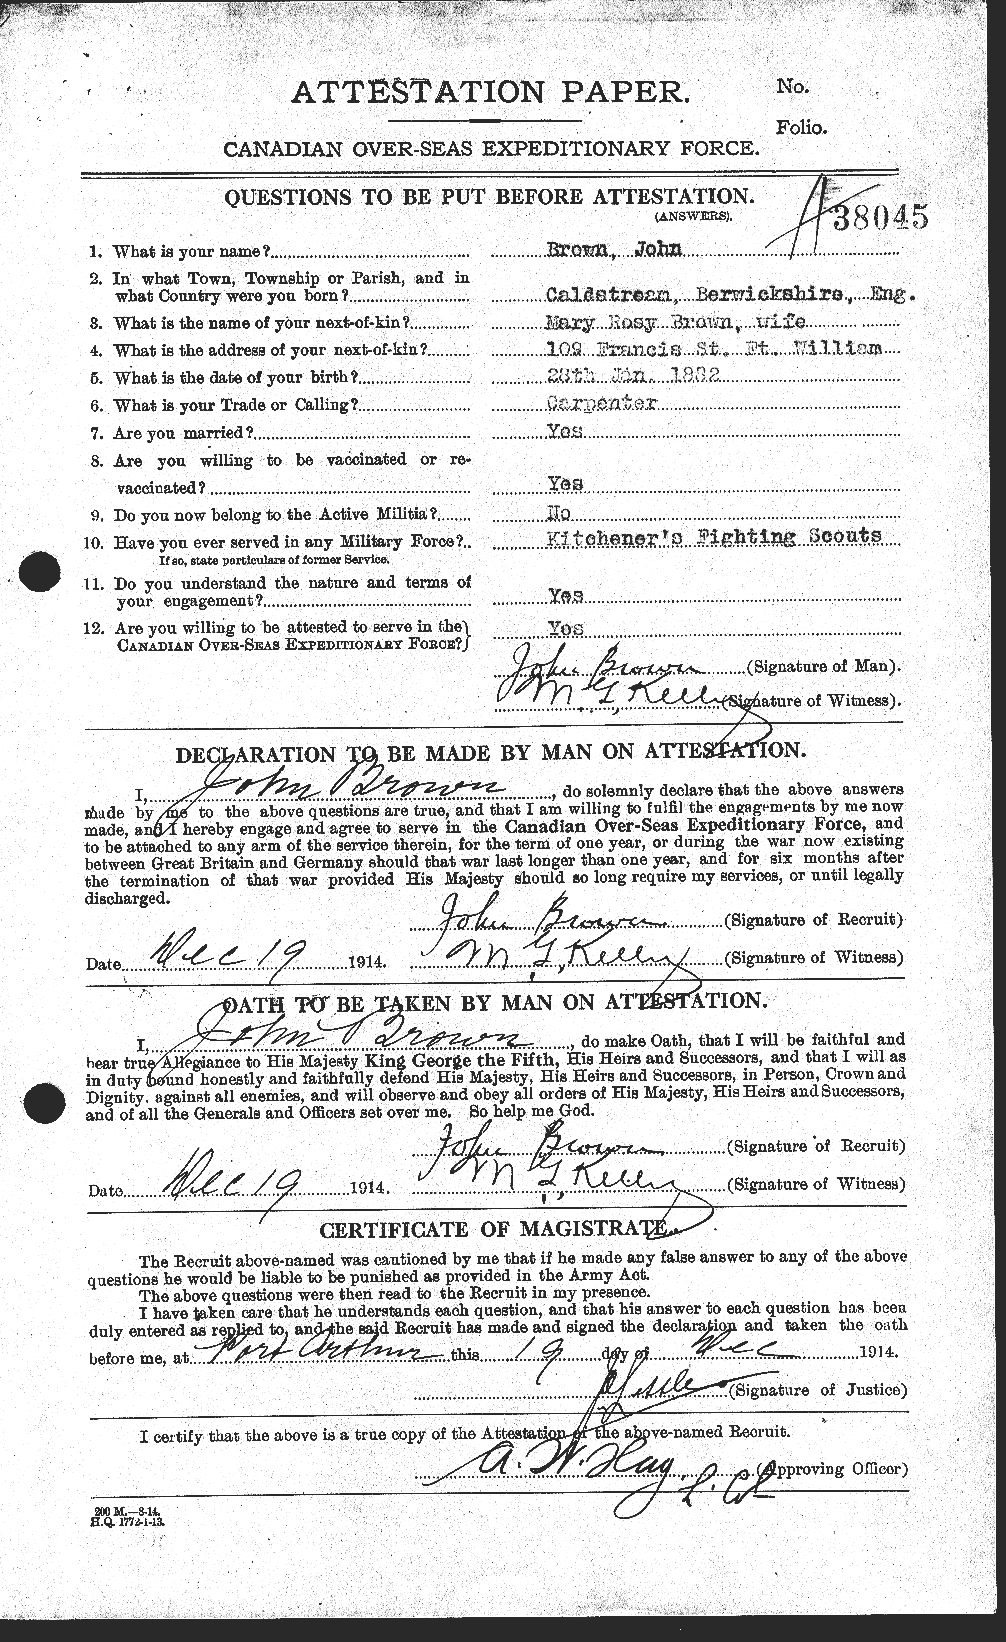 Dossiers du Personnel de la Première Guerre mondiale - CEC 264532a